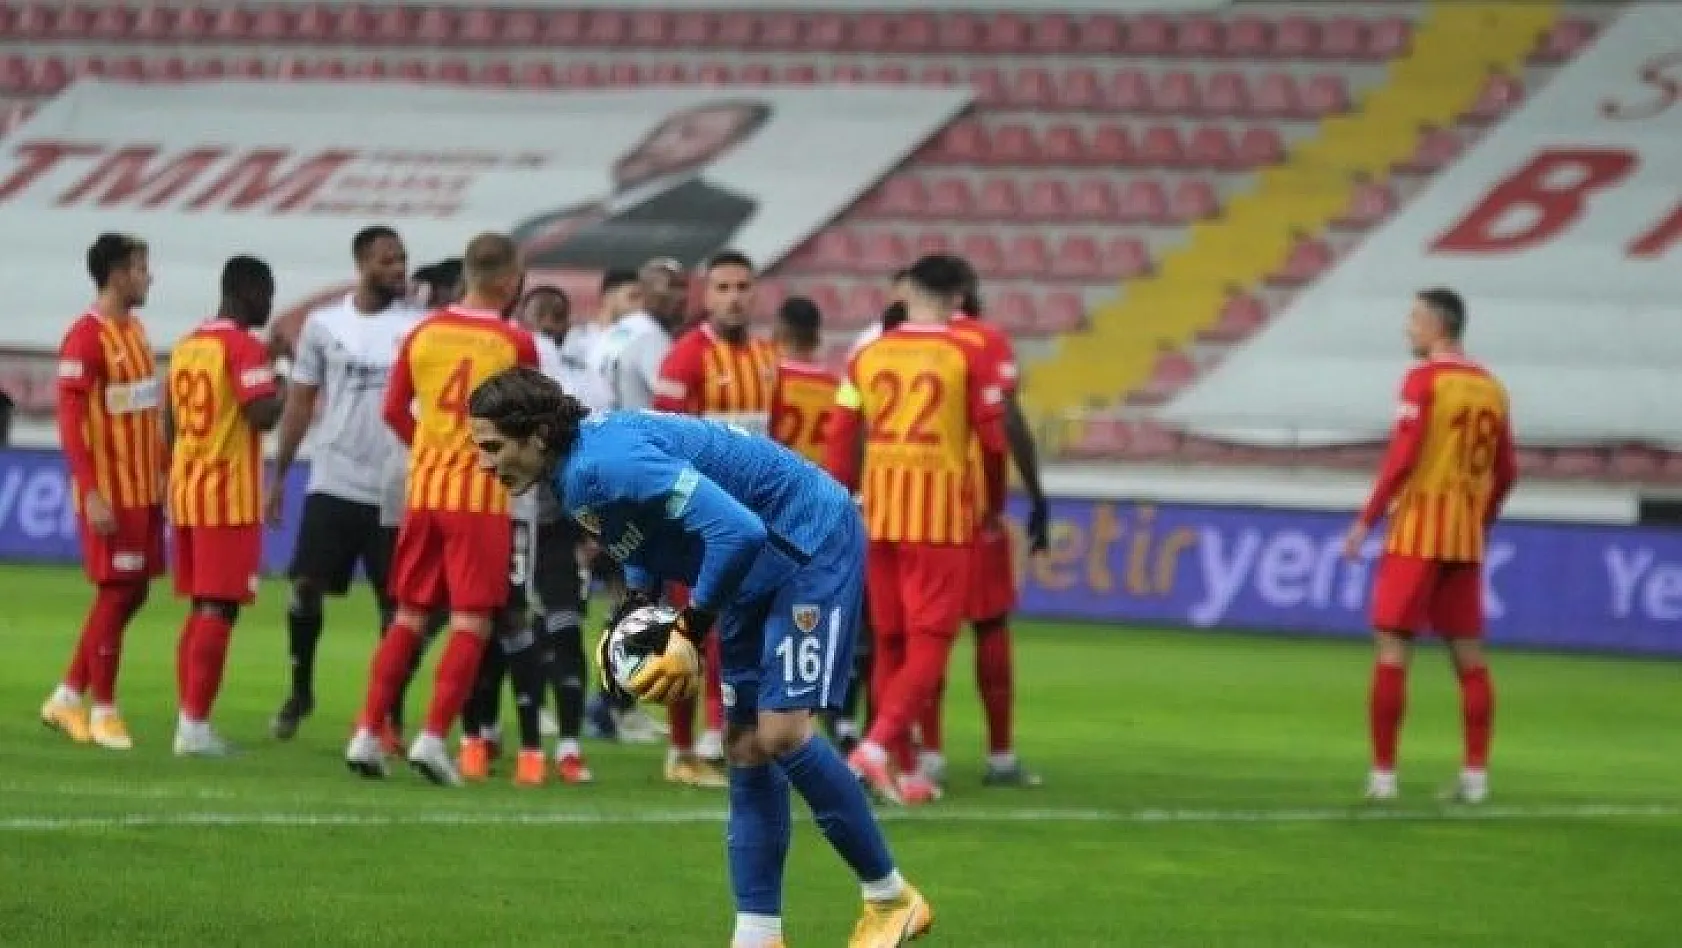 Süper Lig: Kayserispor: 0 - Beşiktaş: 0 (Maç devam ediyor)